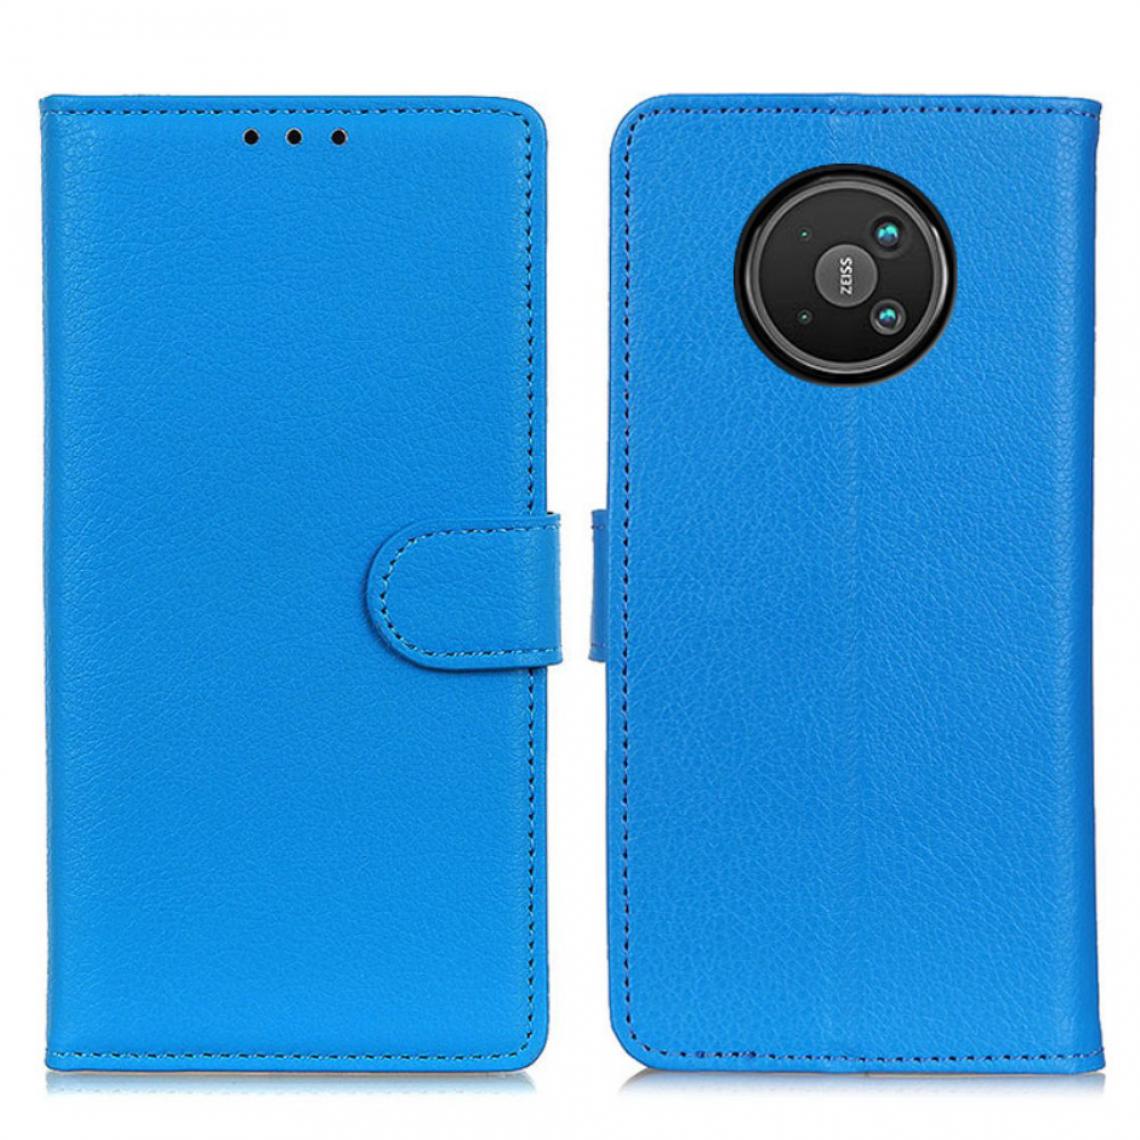 Other - Etui en PU Texture Litchi avec support bleu pour votre Nokia 8 V 5G - Coque, étui smartphone